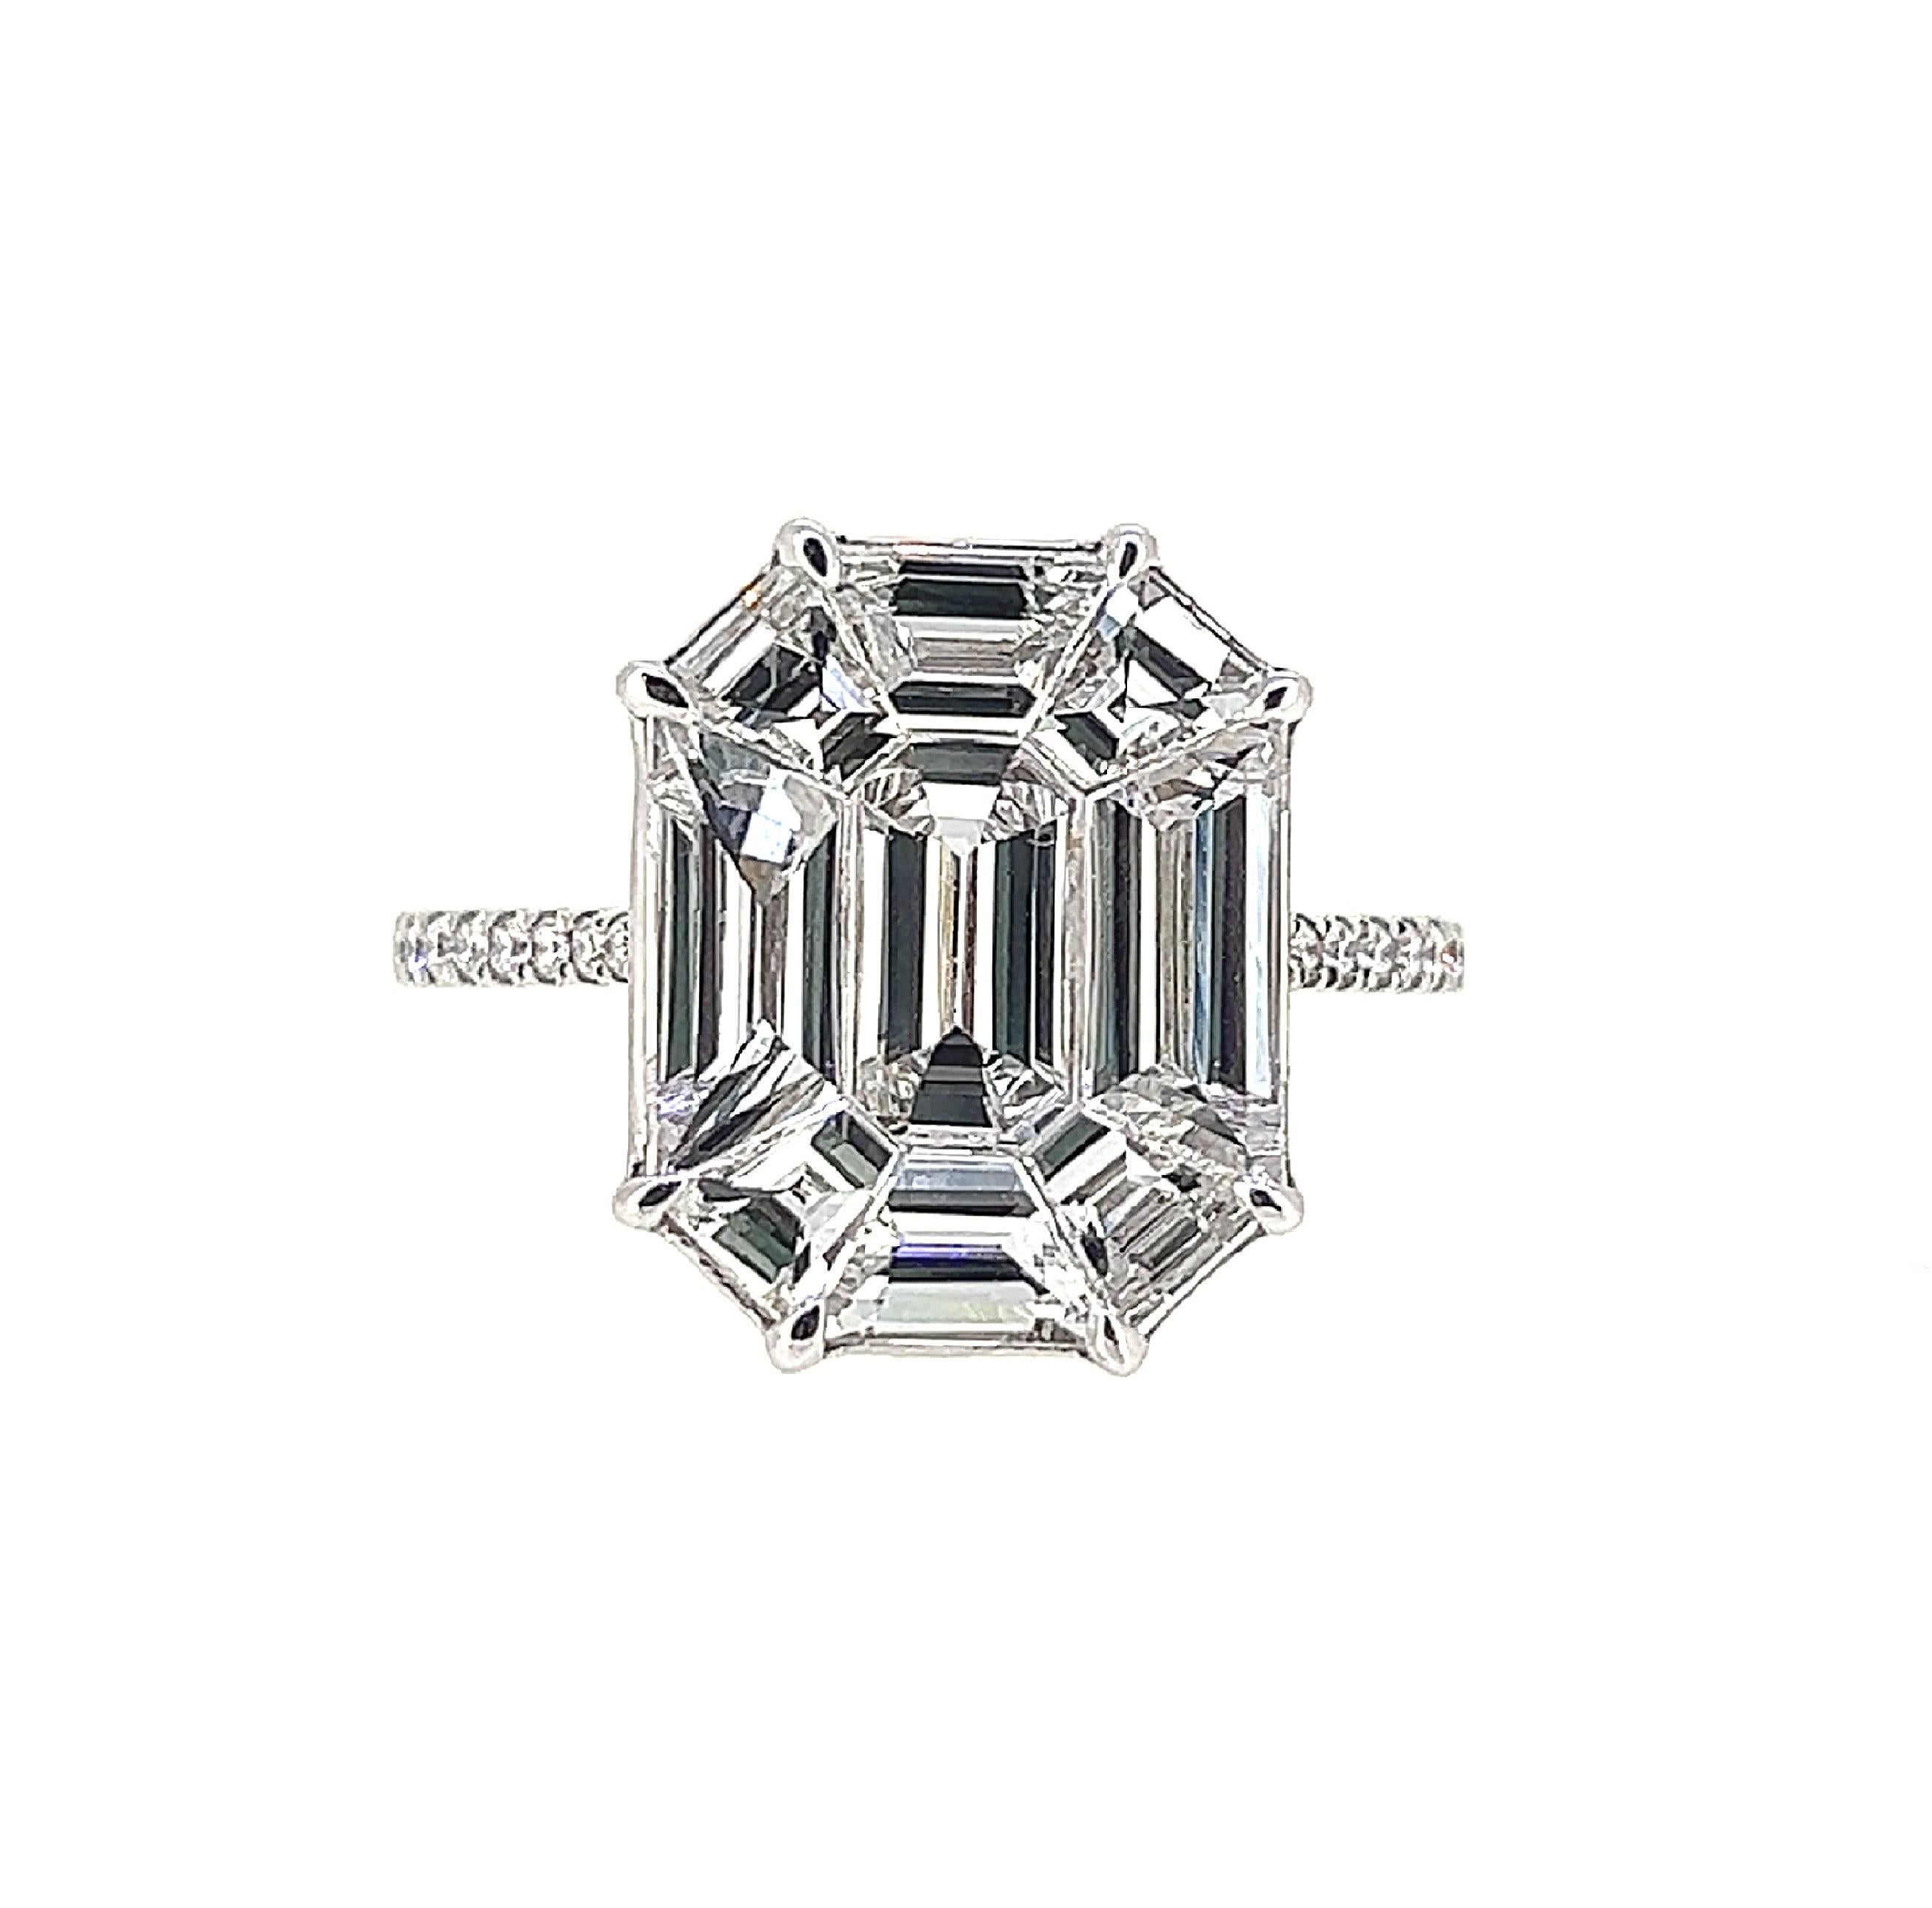 Dieser elegante und stilvolle Ring ist ein wunderschönes Geschenk; die abgebildete Tafelgröße sieht so großartig aus wie ein 10 Karat Diamant!  Dieser unsichtbar gefasste Diamantring aus 18 Karat Weißgold ist ein raffiniertes Design mit 9 Diamanten